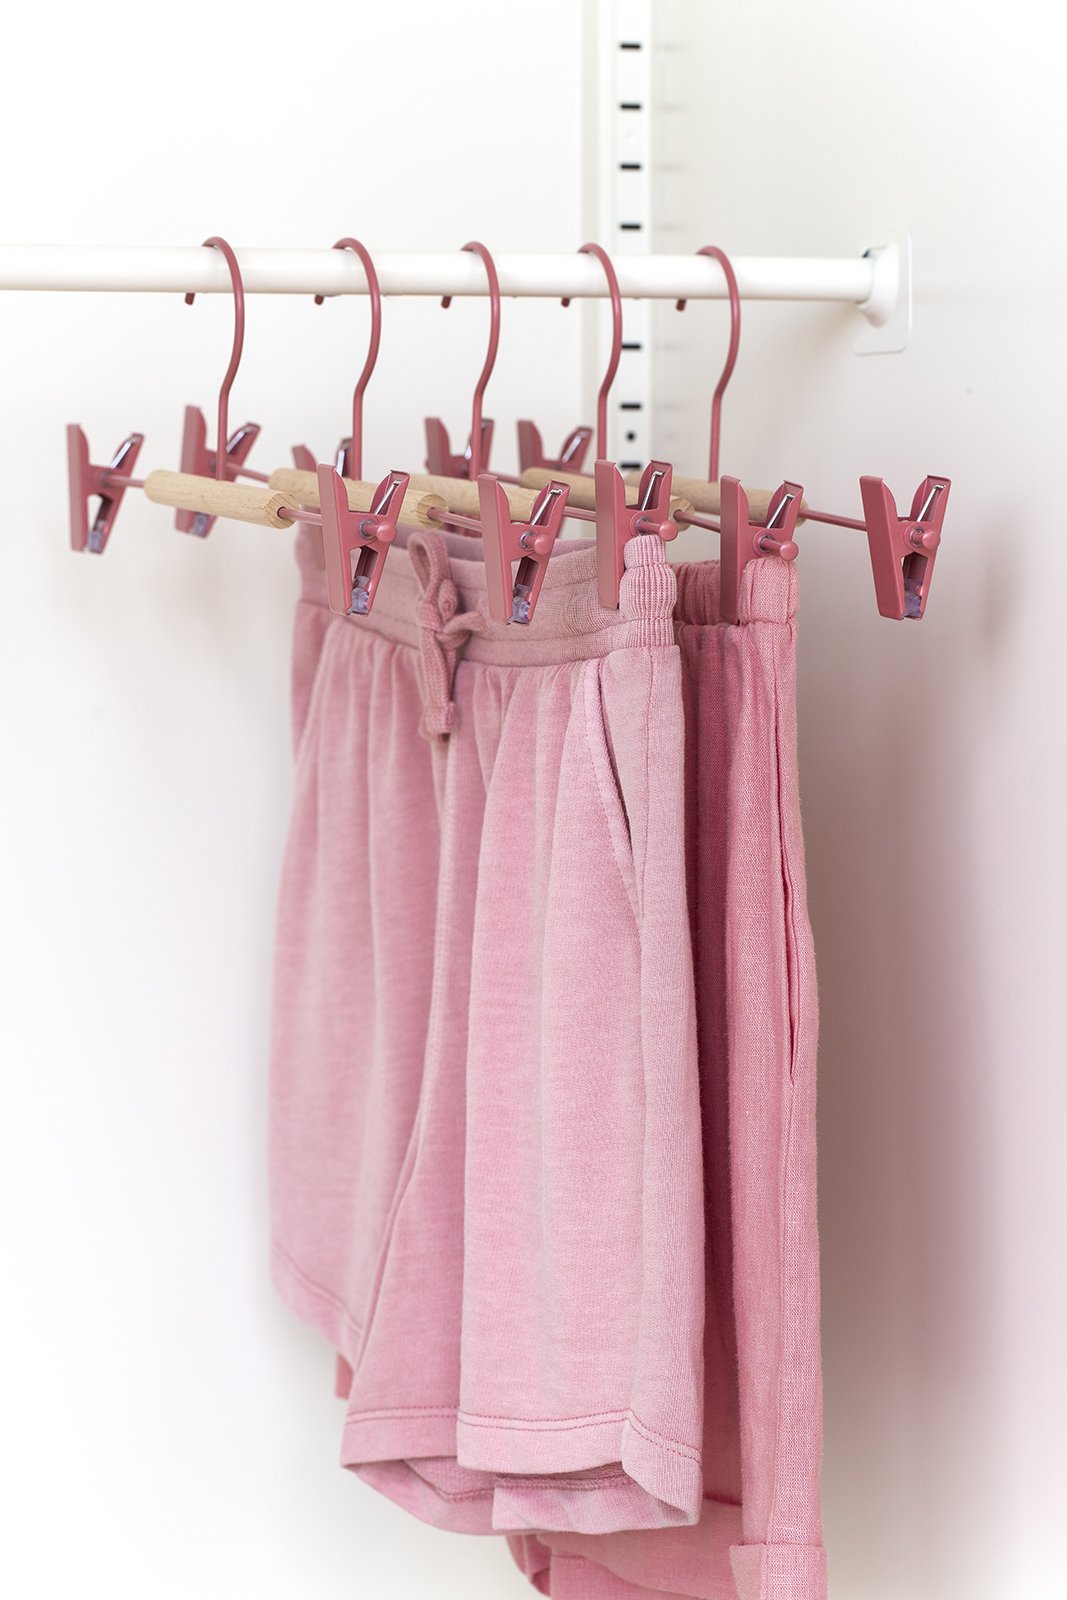 Adult Clip Hangers In Berry